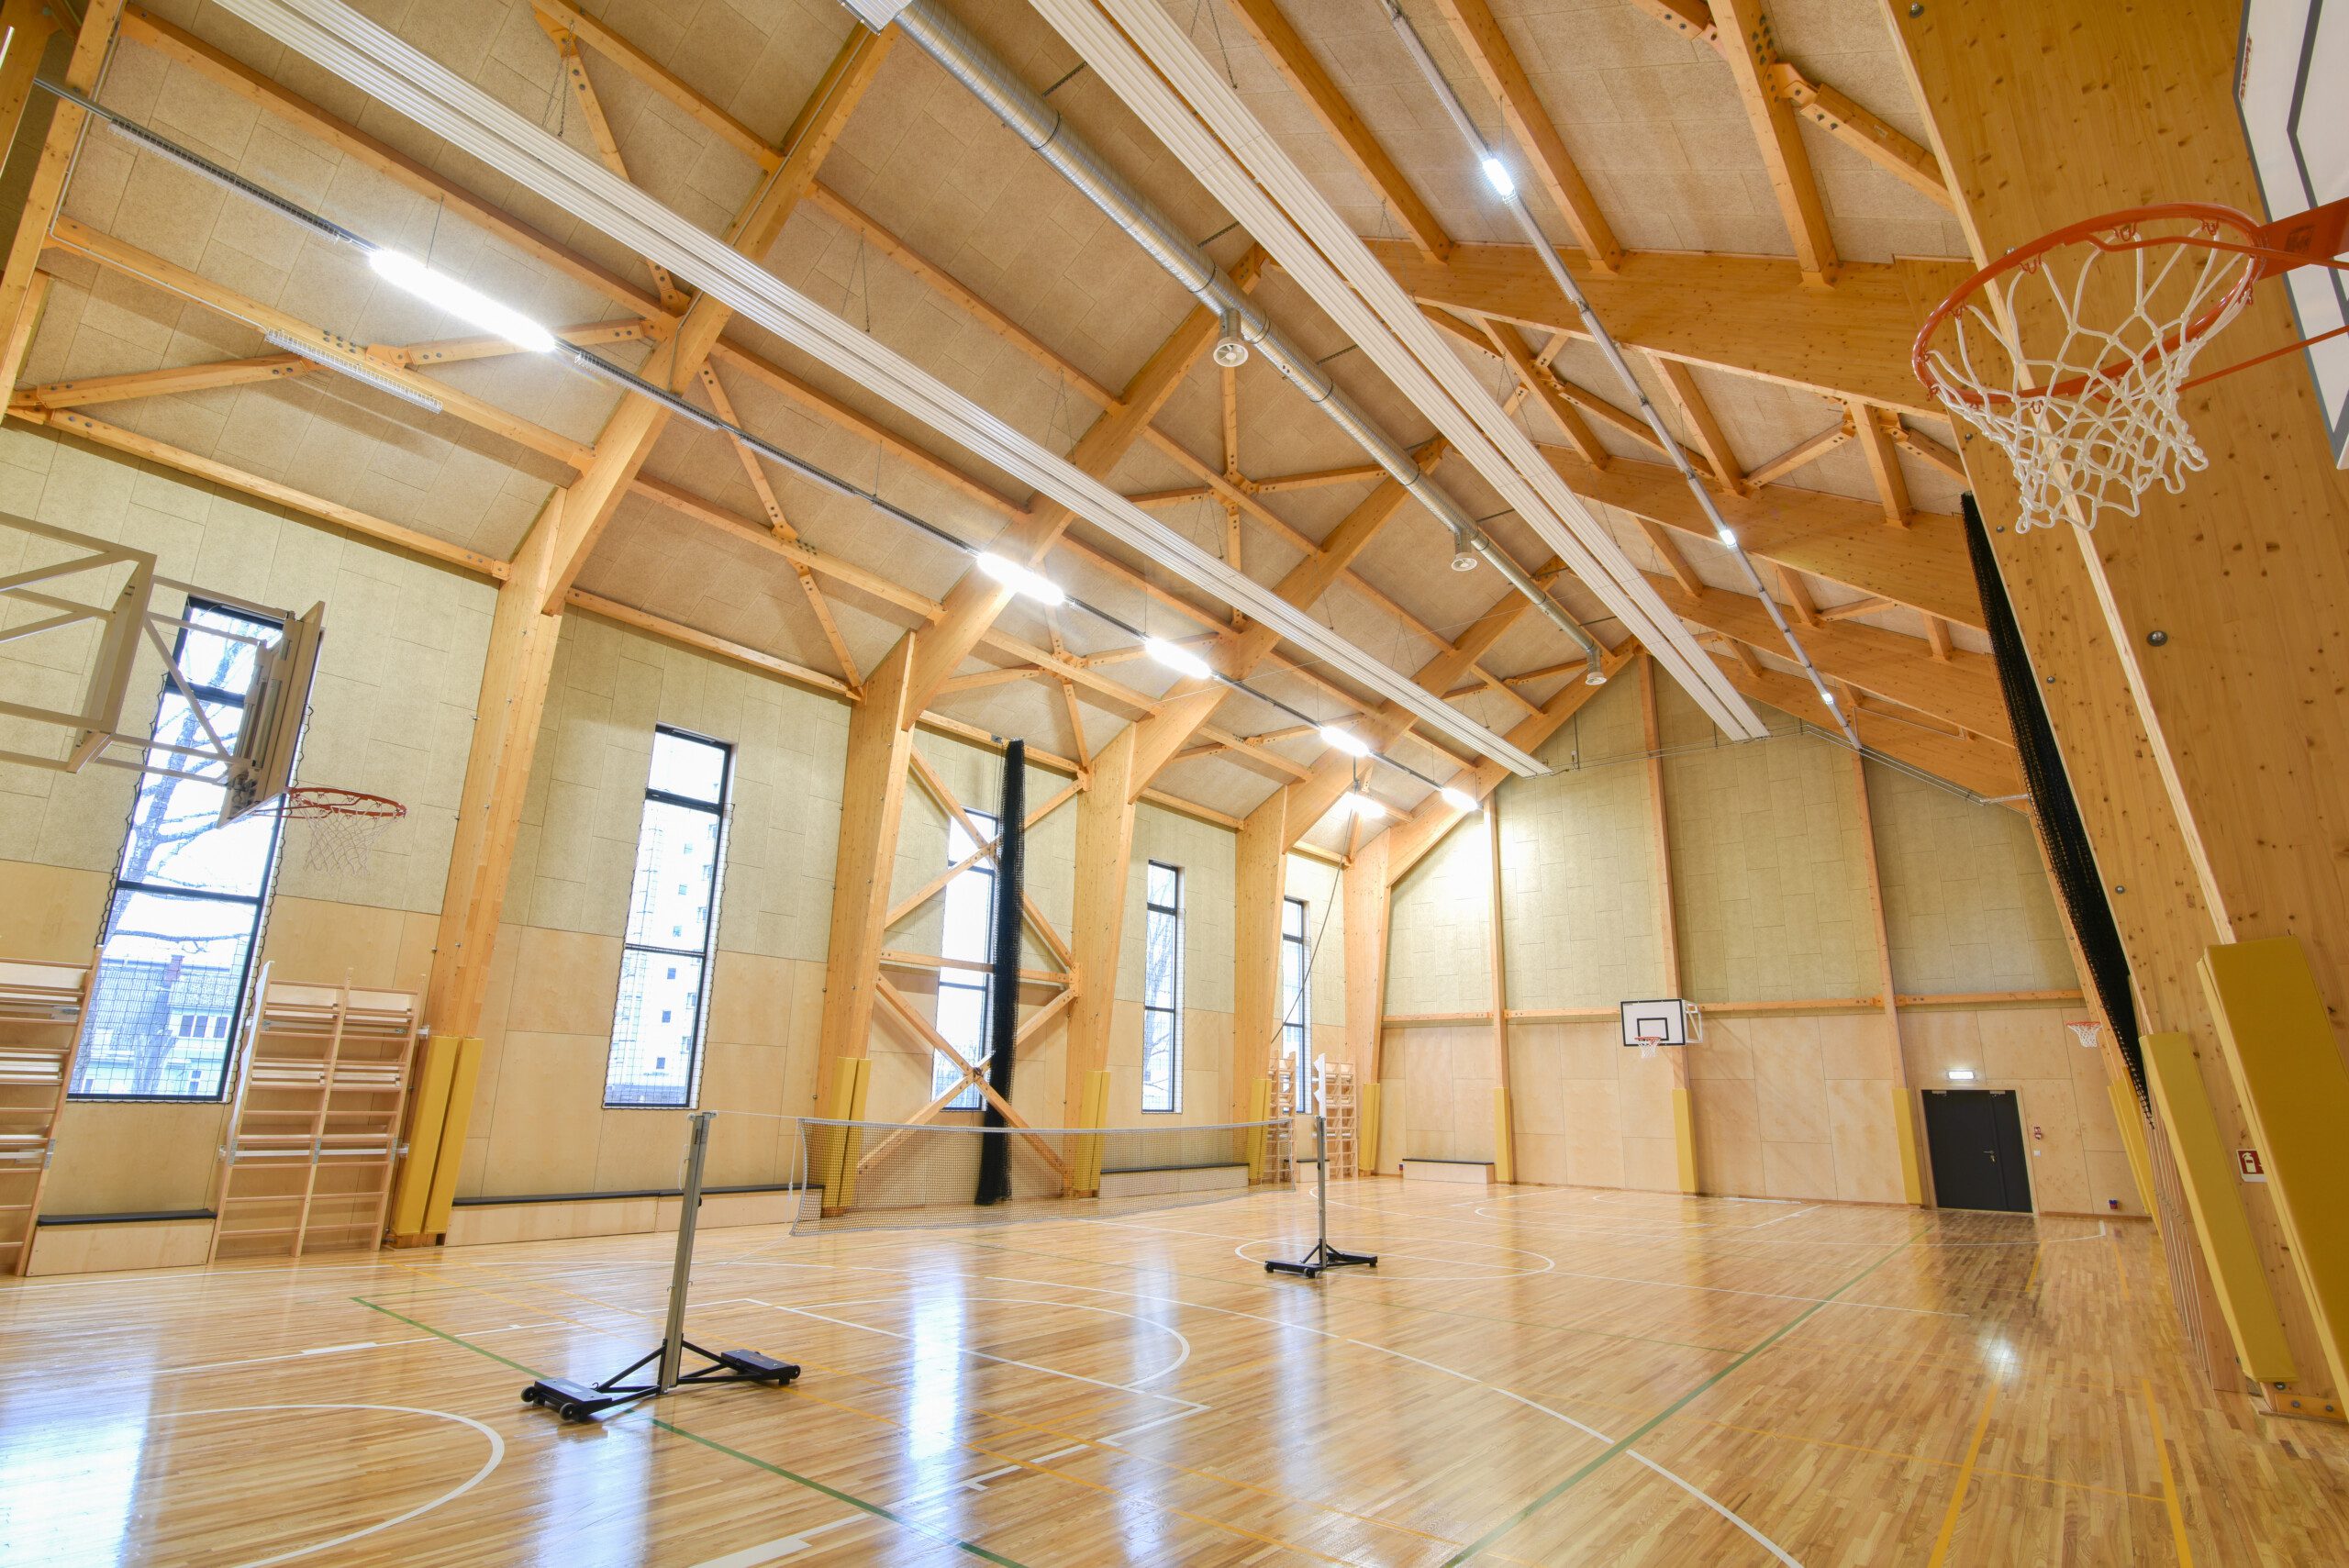 Sports hall in Latvia Photo 2